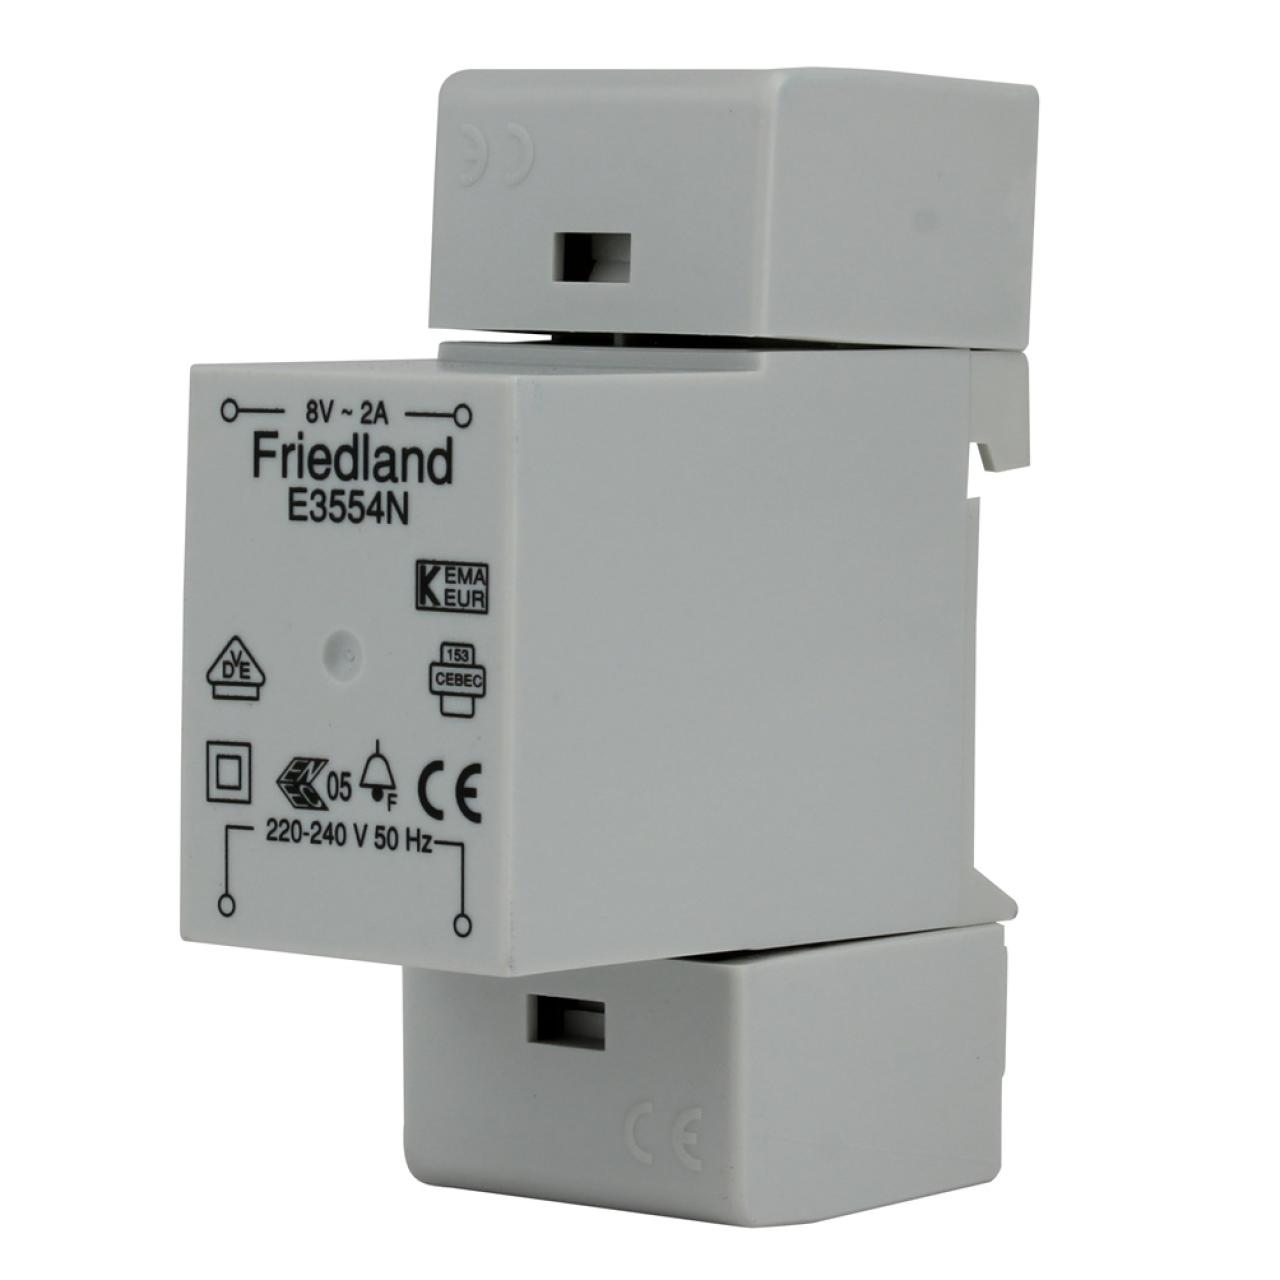 Friedland Klingeltransformator E3554N, 8 V / 2 A